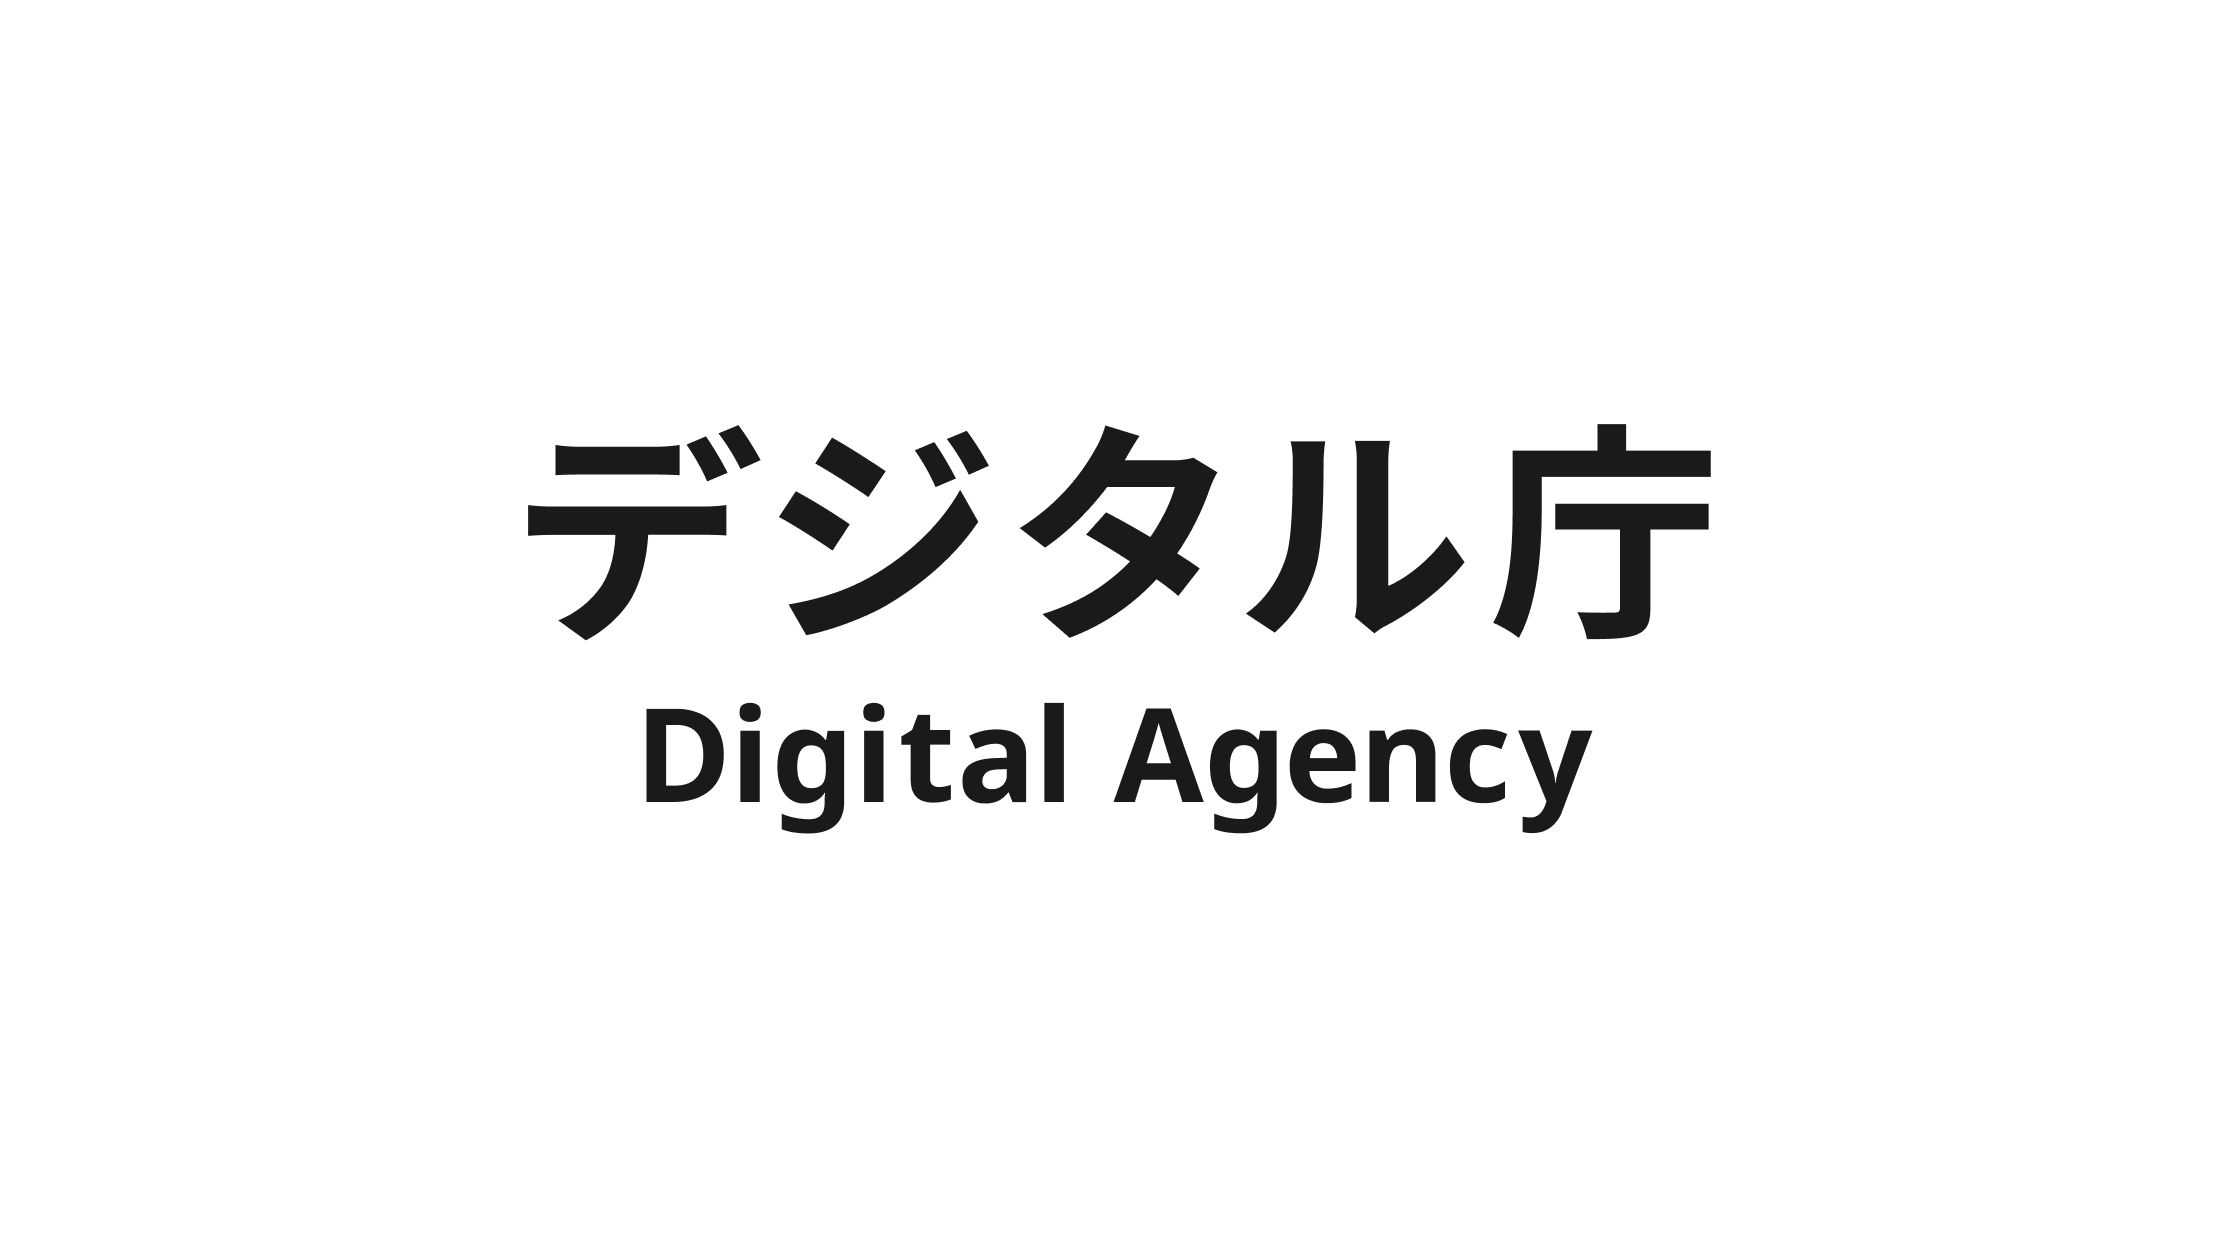 中央に「デジタル庁 Digital Agency」とシンプルに描かれた黒いロゴが配置されている。